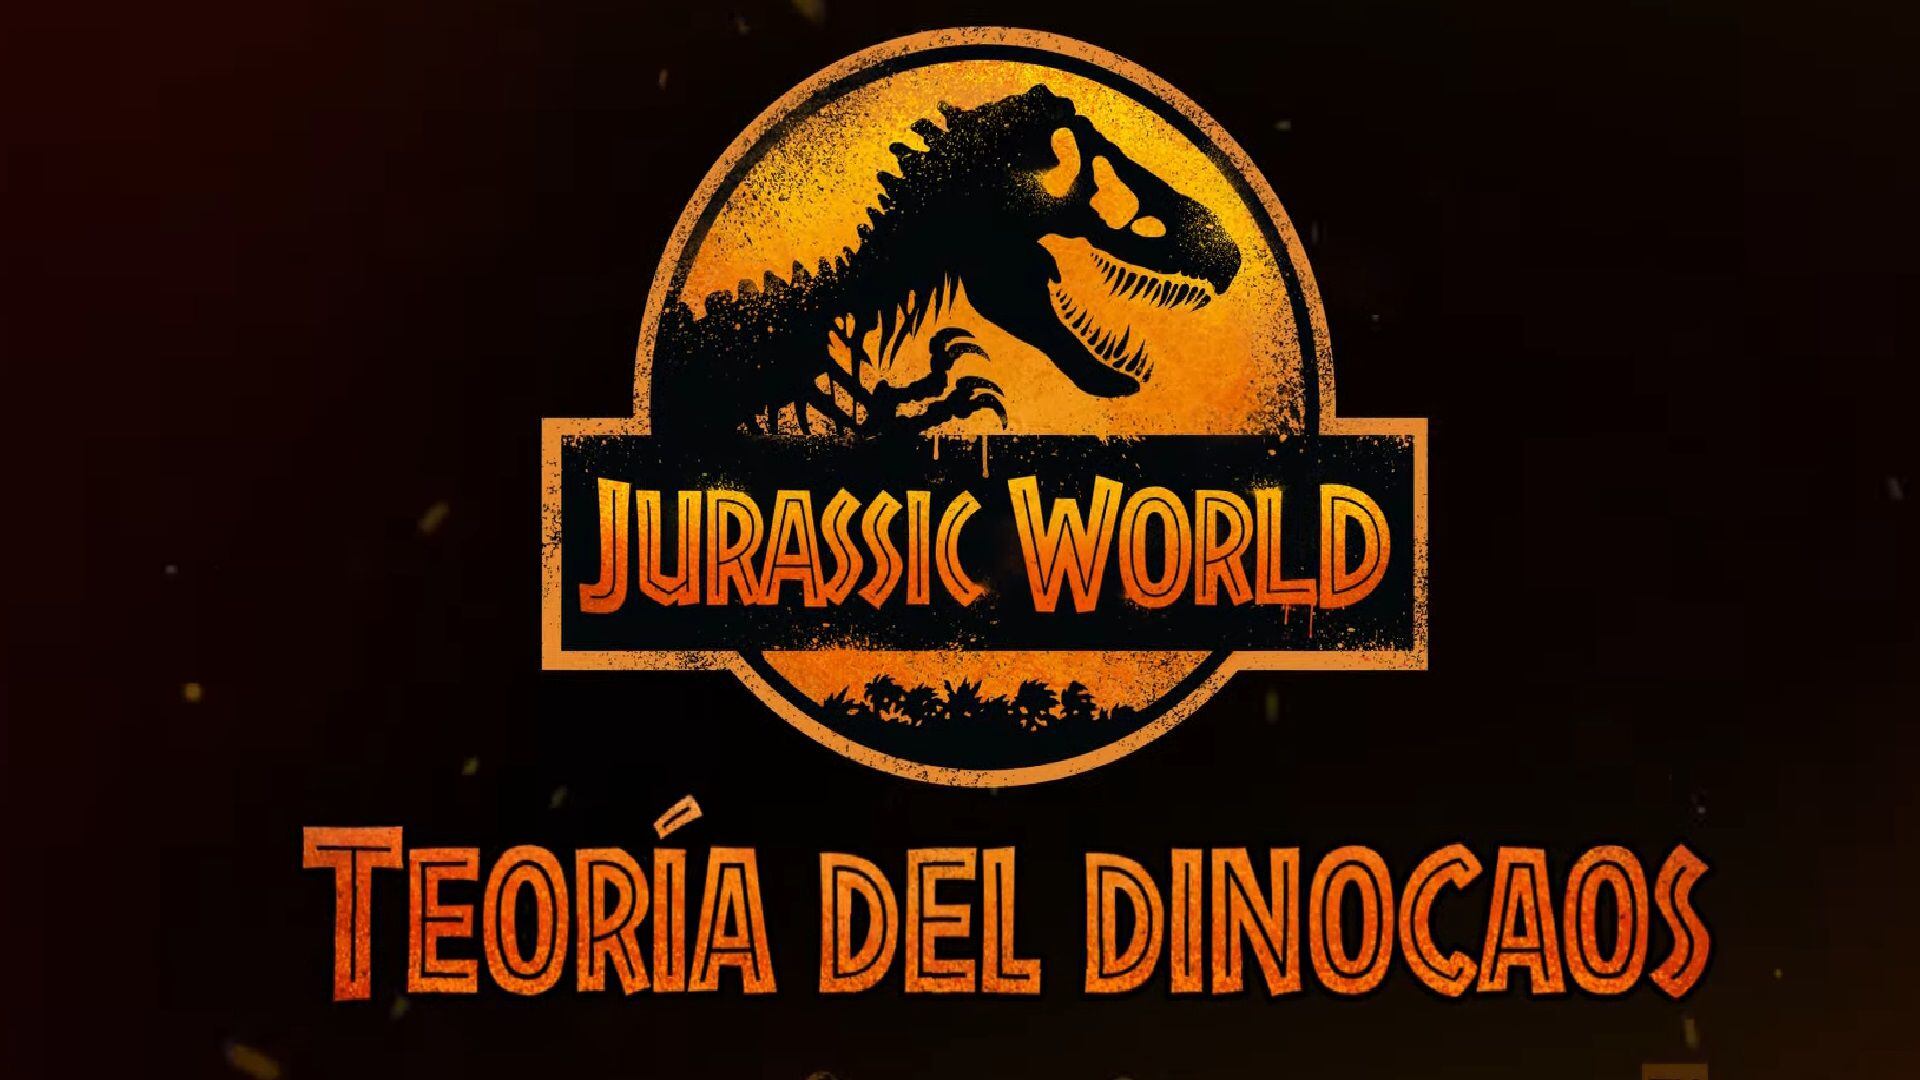 Jurassic World: teoría del dinocaos (Netflix)